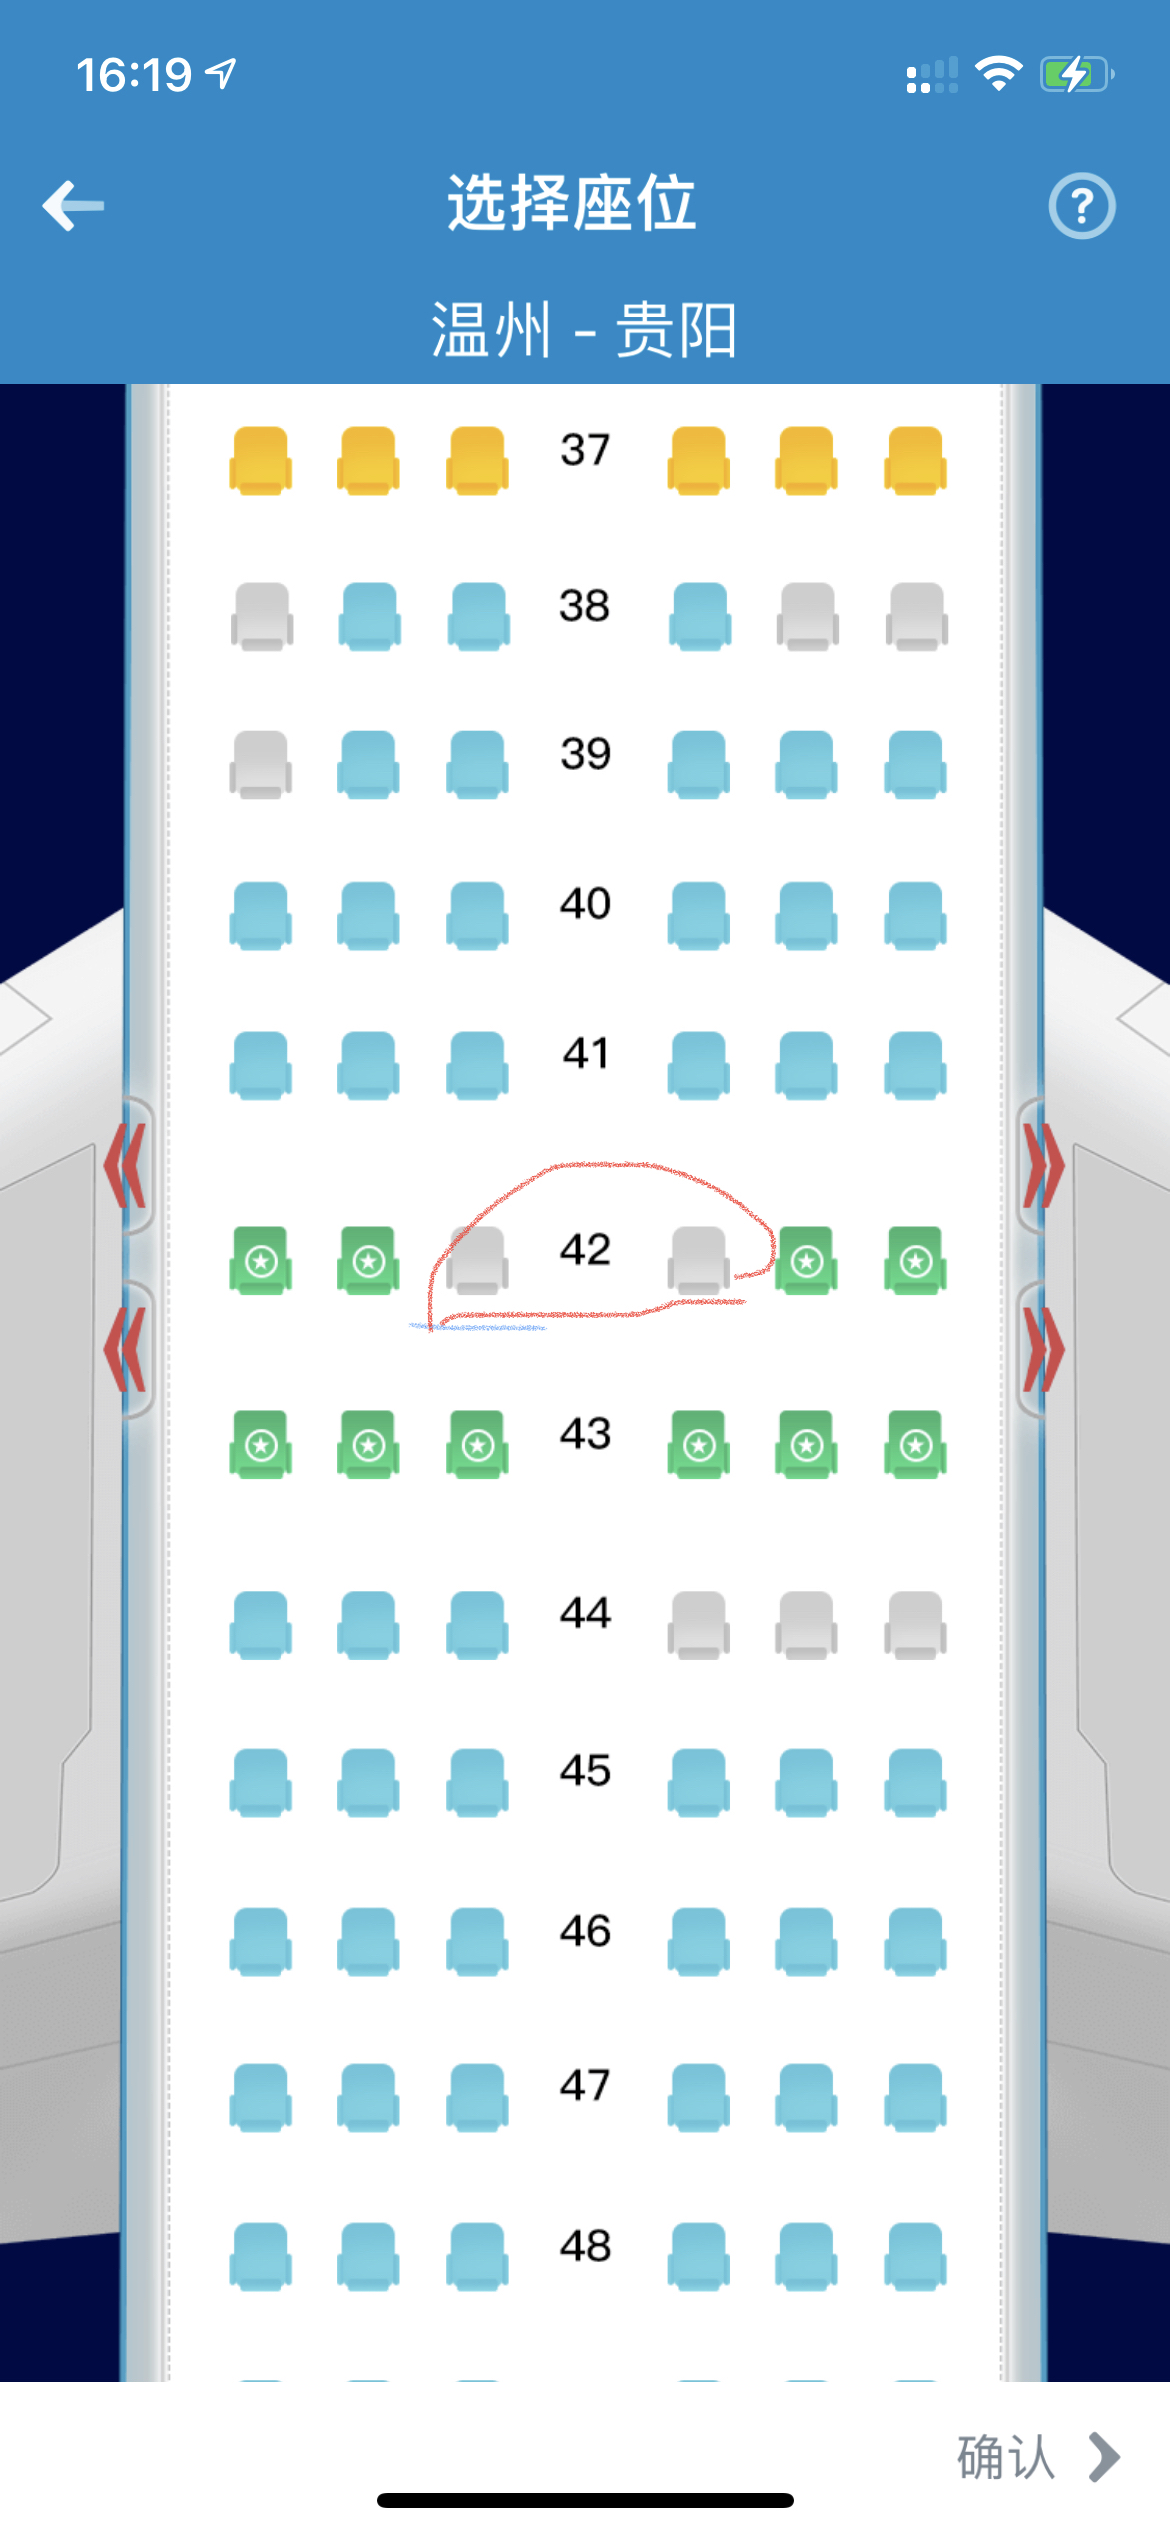 重发 | 东航A330商务舱哪款合你意？教你分辨E、H和L的机秘